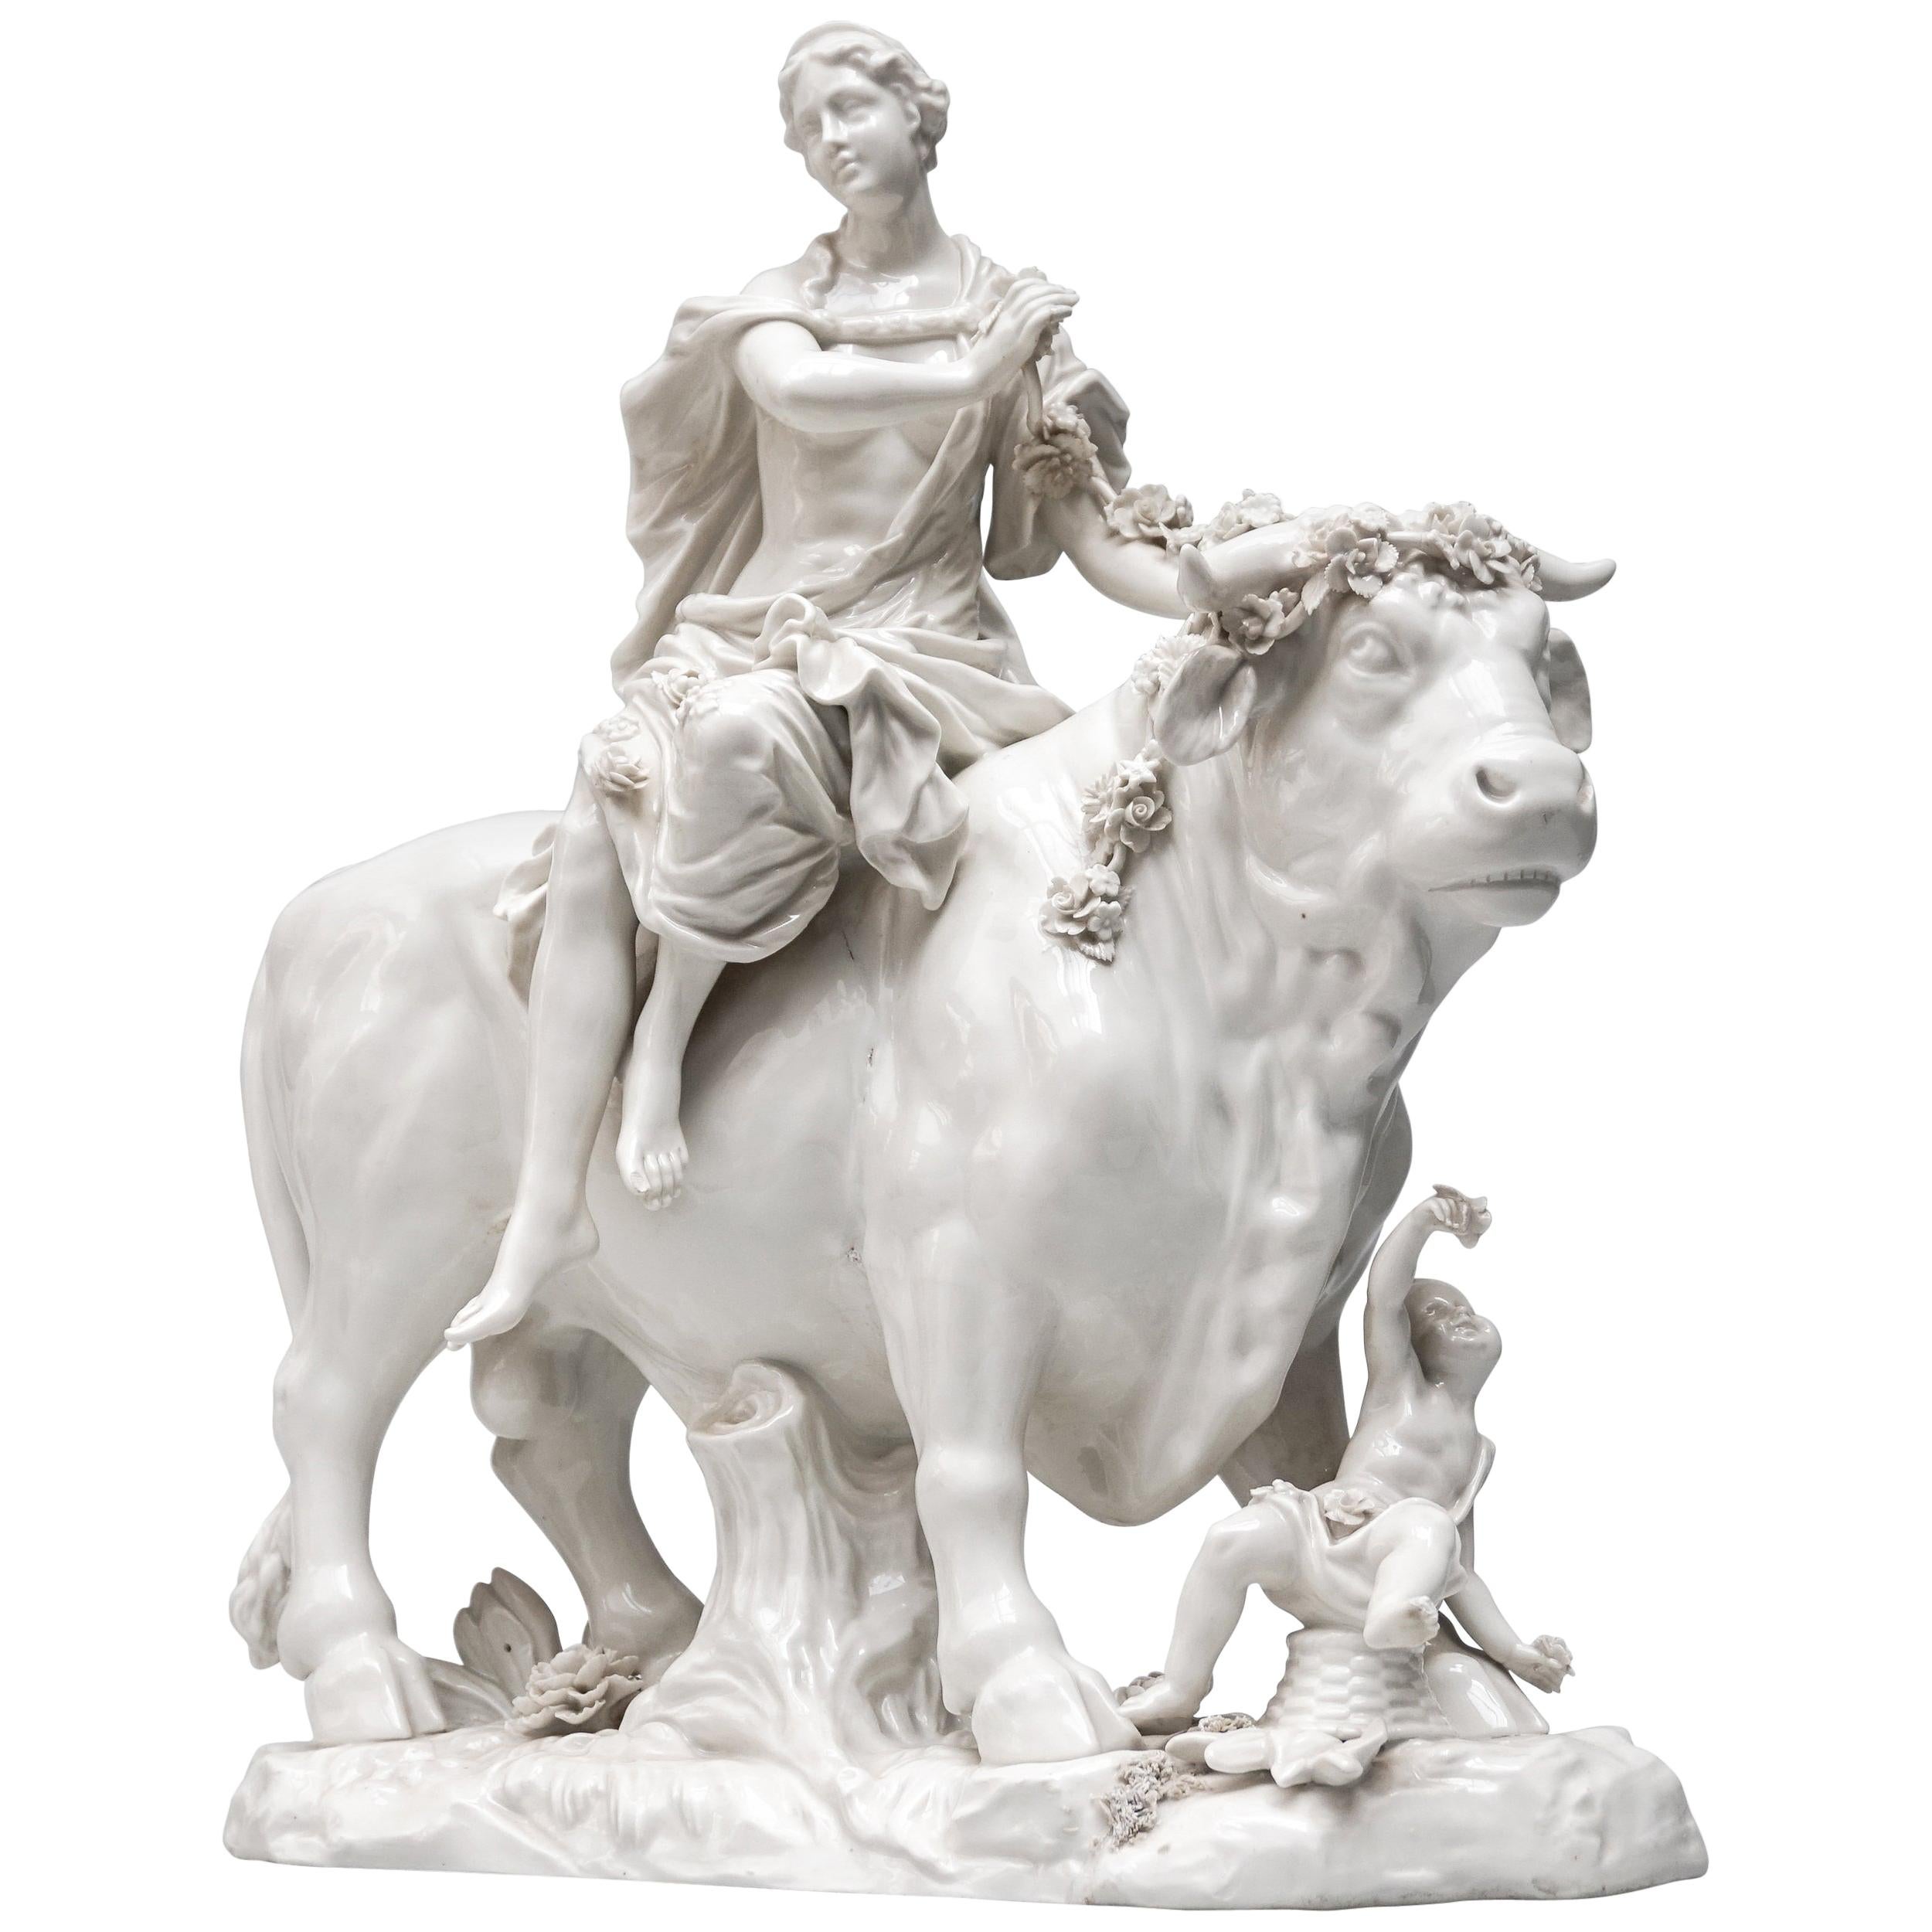 Wiener figurales Porzellan des 18. Jahrhunderts Griechische Mythologie-Gruppe von Europa und Zeus